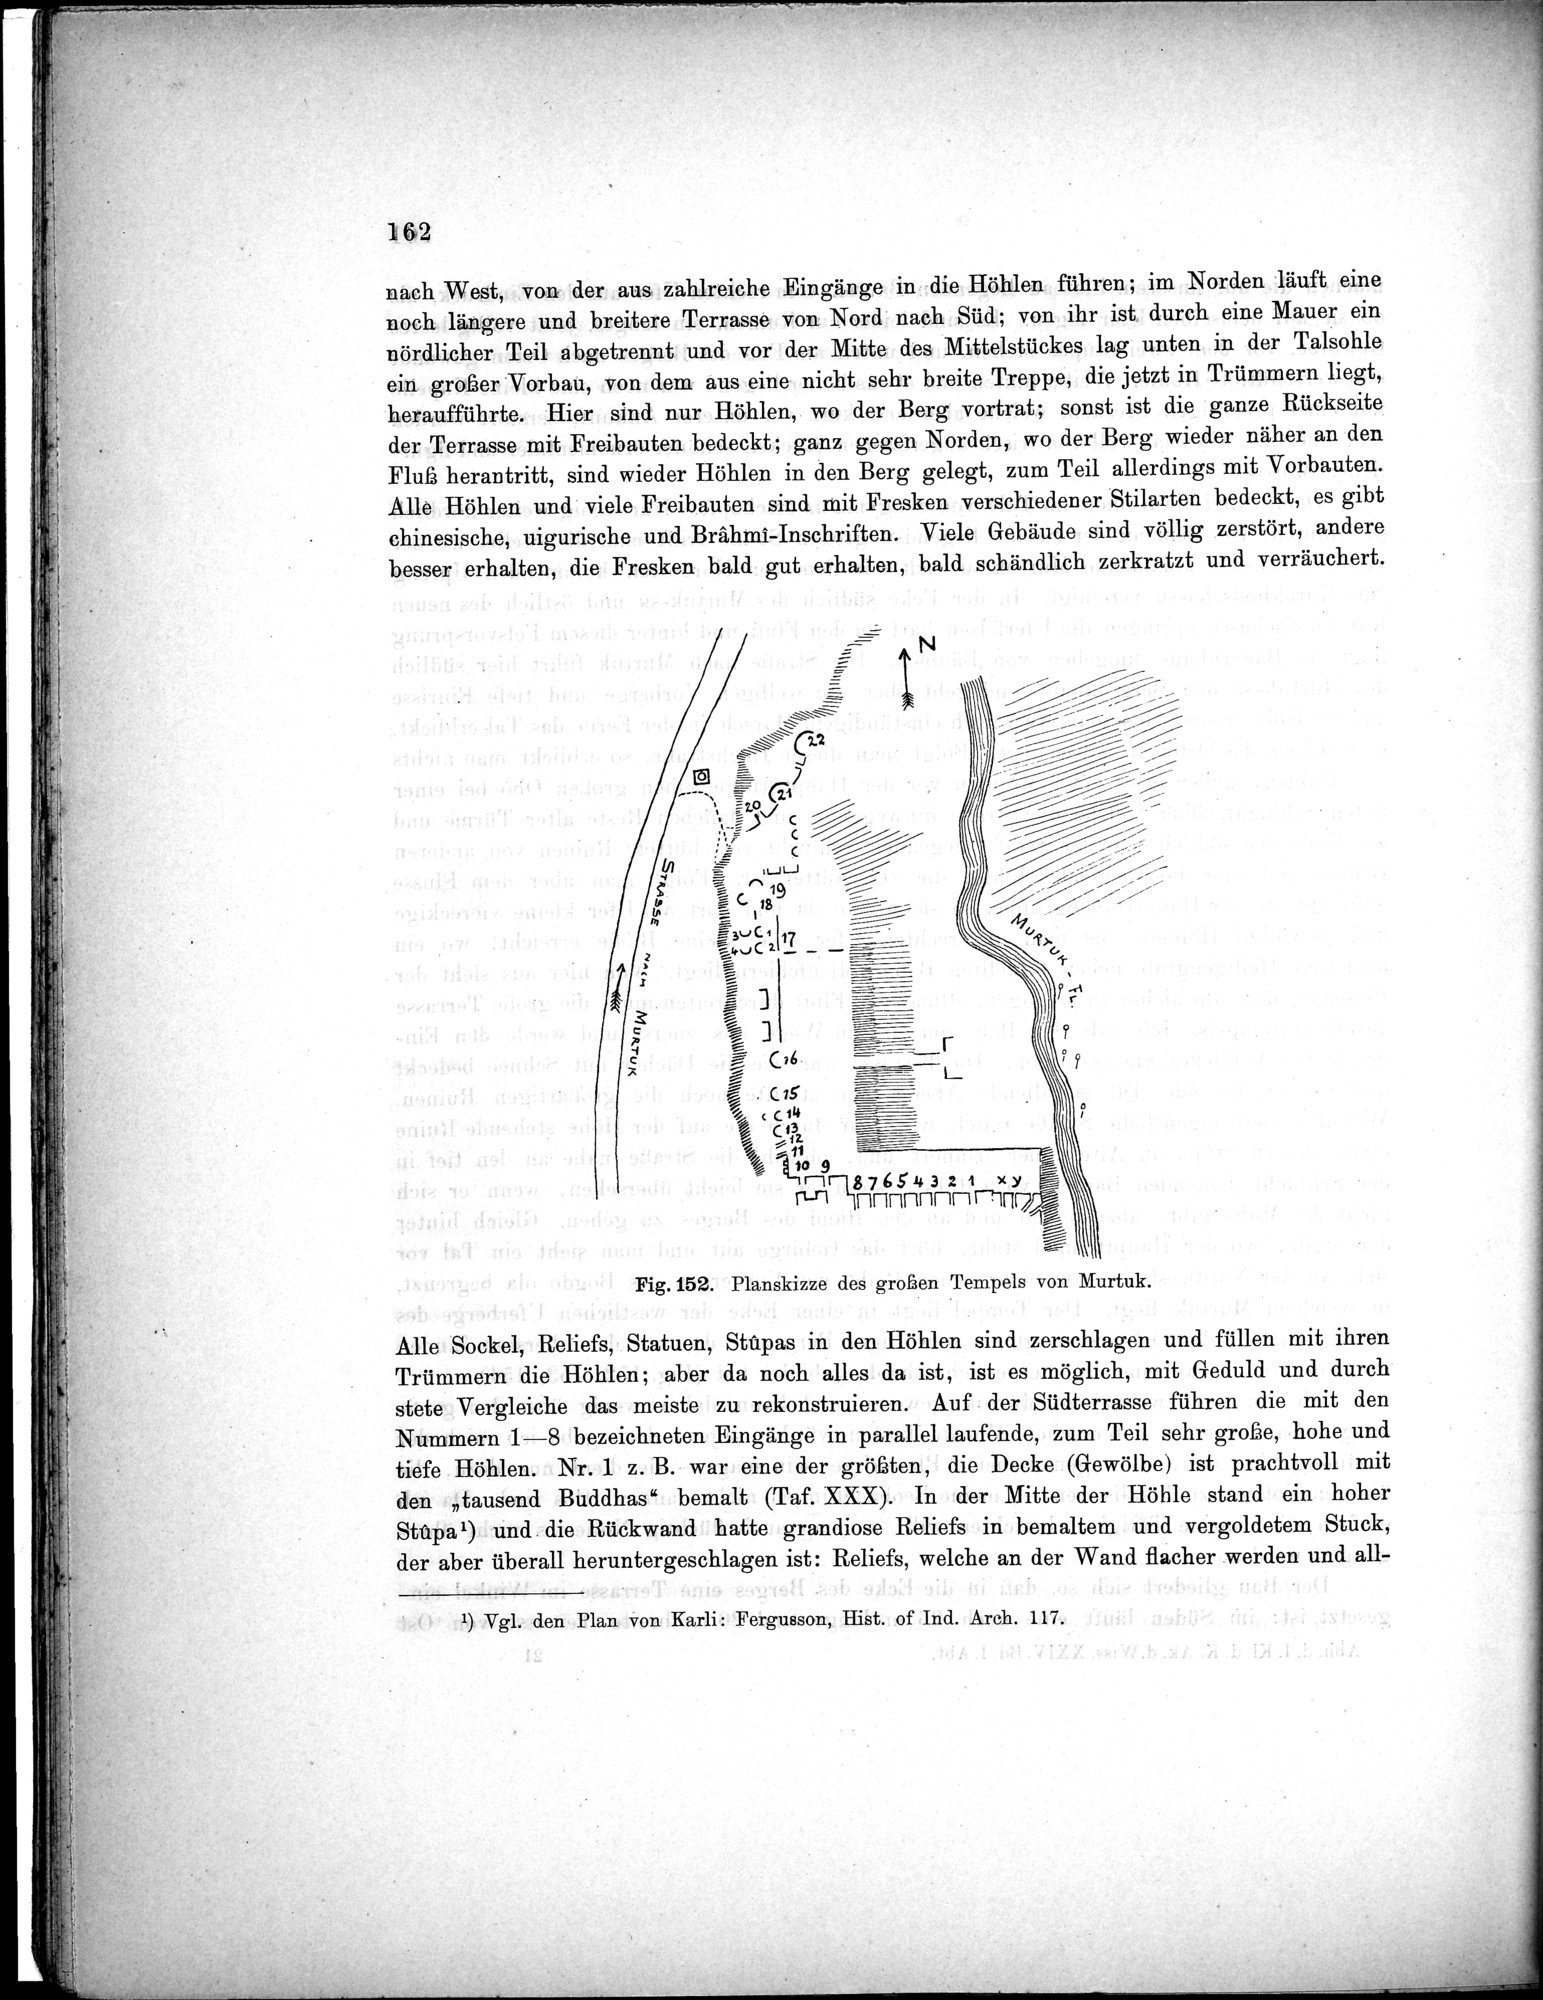 Bericht über archäologische Arbeiten in Idikutschari und Umgebung im Winter 1902-1903 : vol.1 / Page 172 (Grayscale High Resolution Image)